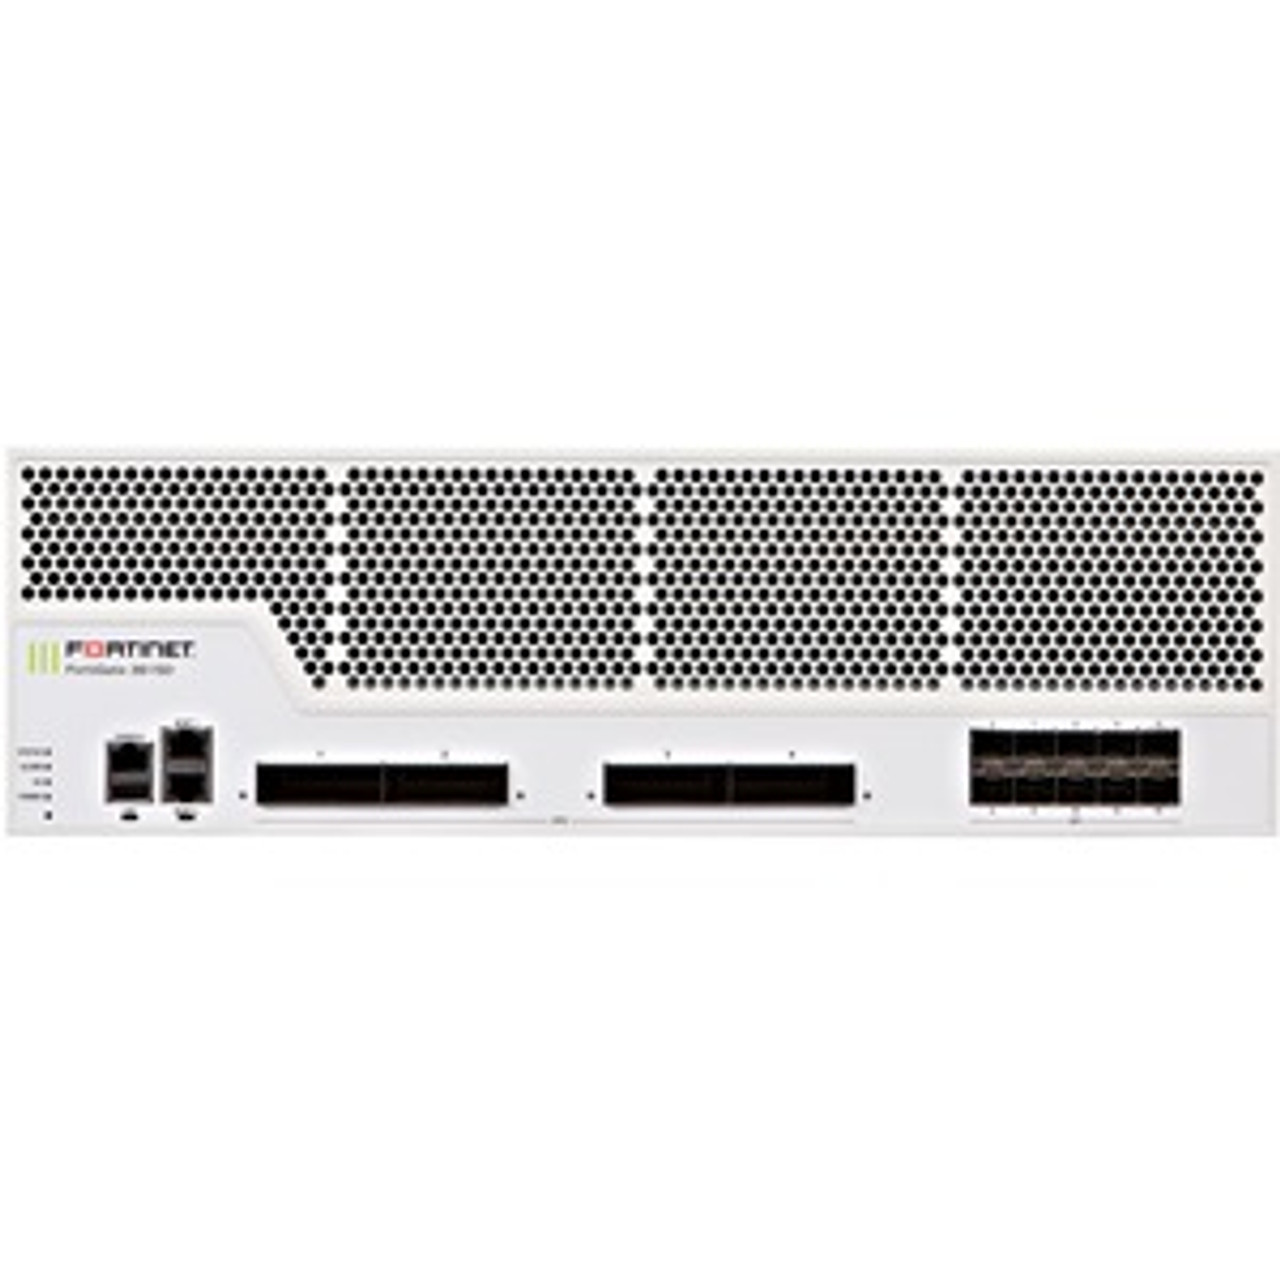 FG-3815D-USG Fortinet 3815D 14-Ports 100 Gigabit Ethernet 3U Rack Mountable Network Switch with 14 x Expansion Slots (Refurbished)